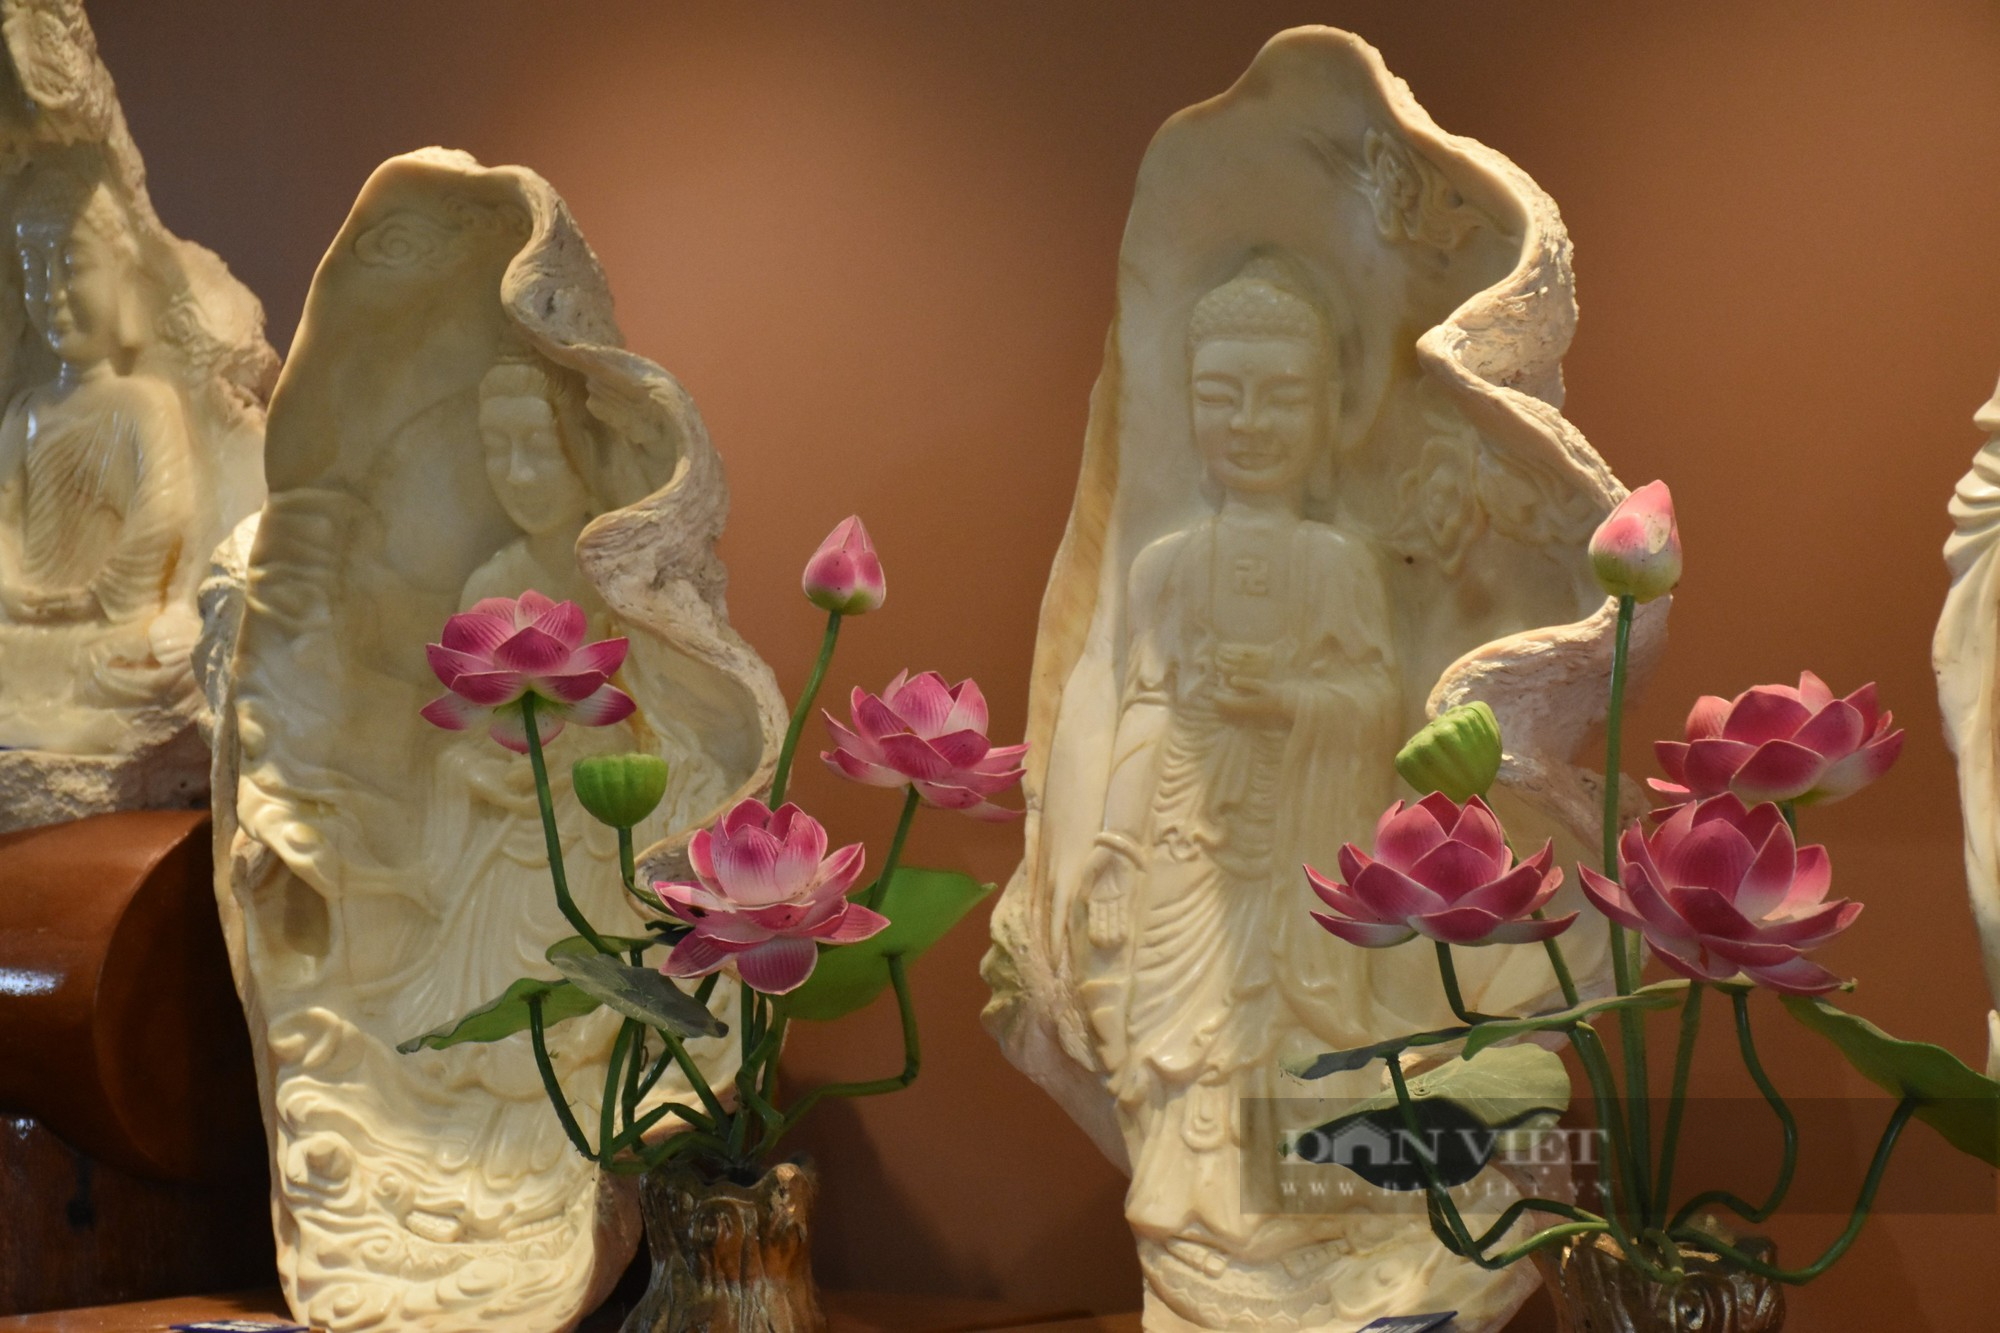 Một ngôi chùa có bộ sưu tập điêu khắc tượng Phật trên vỏ ốc xác lập kỷ lục Việt Nam - Ảnh 7.